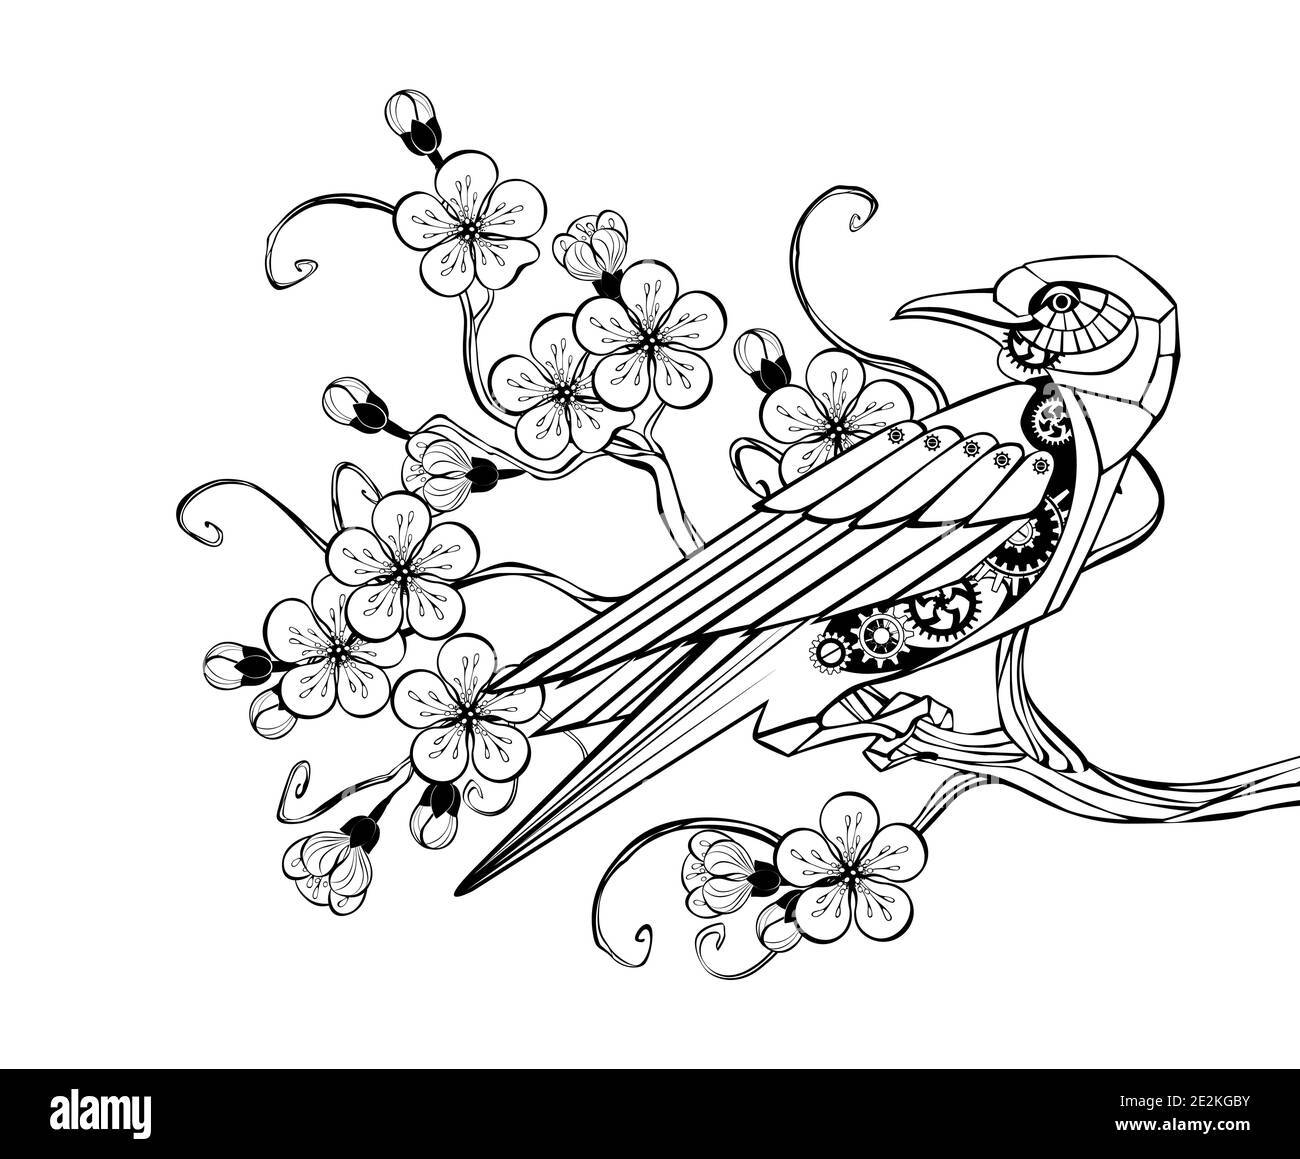 Umriss schwarzen mechanischen Vogel mit Zahnrädern sitzt auf blühenden Sakura Zweig. Steampunk-Style. Stock Vektor